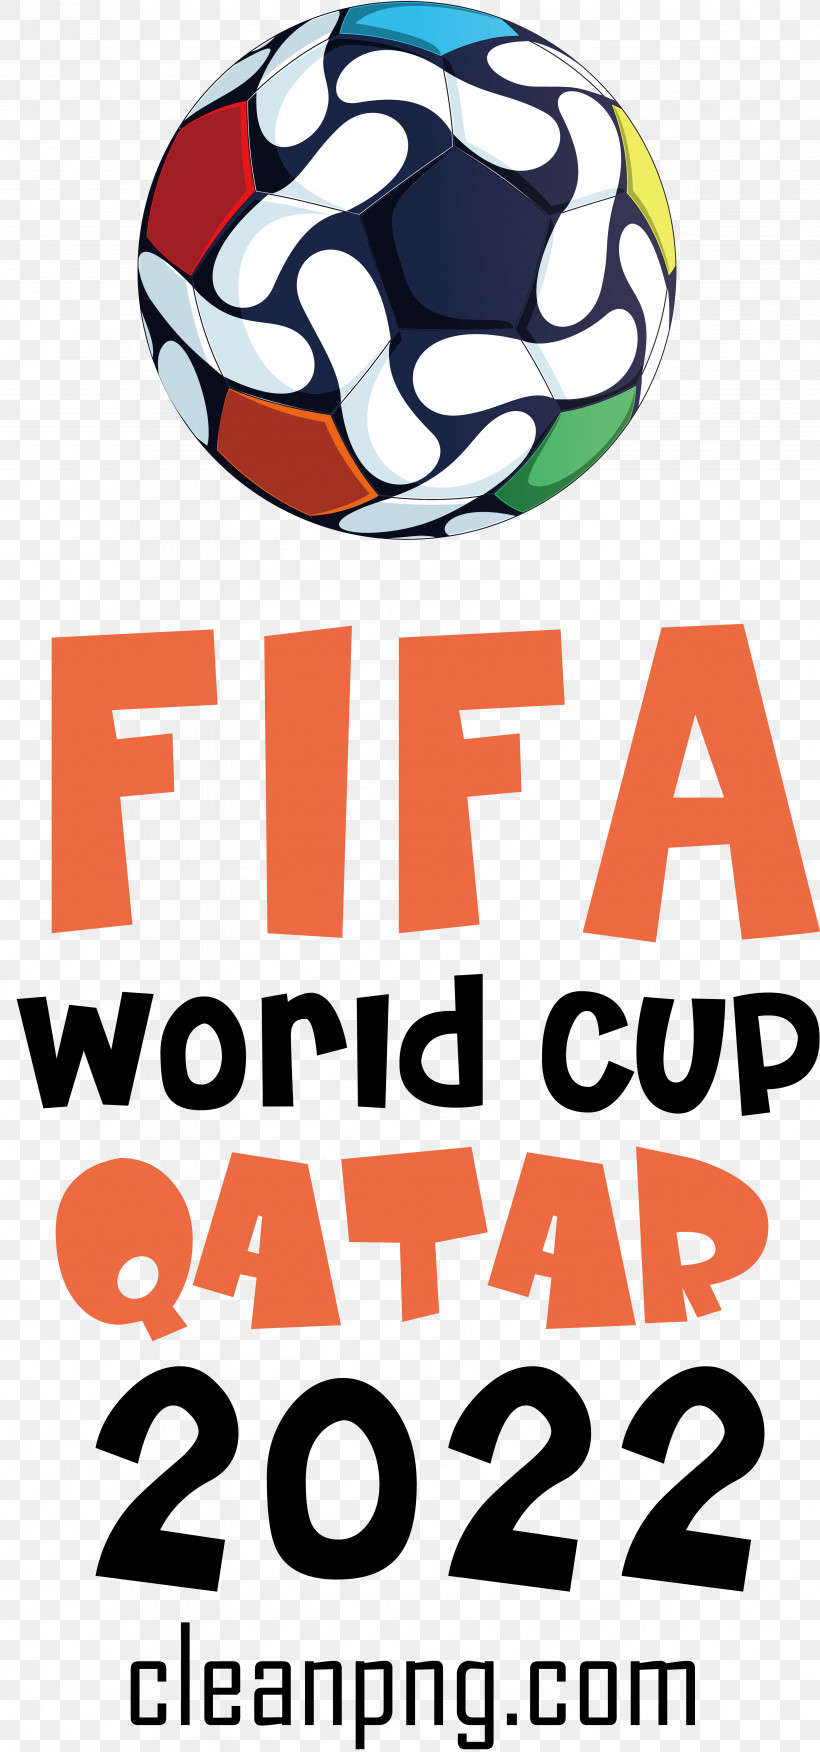 Fifa World Cup Qatar 2022 Fifa World Cup Qatar Football Soccer, PNG, 3562x7613px, Fifa World Cup Qatar 2022, Fifa World Cup, Football, Qatar, Soccer Download Free